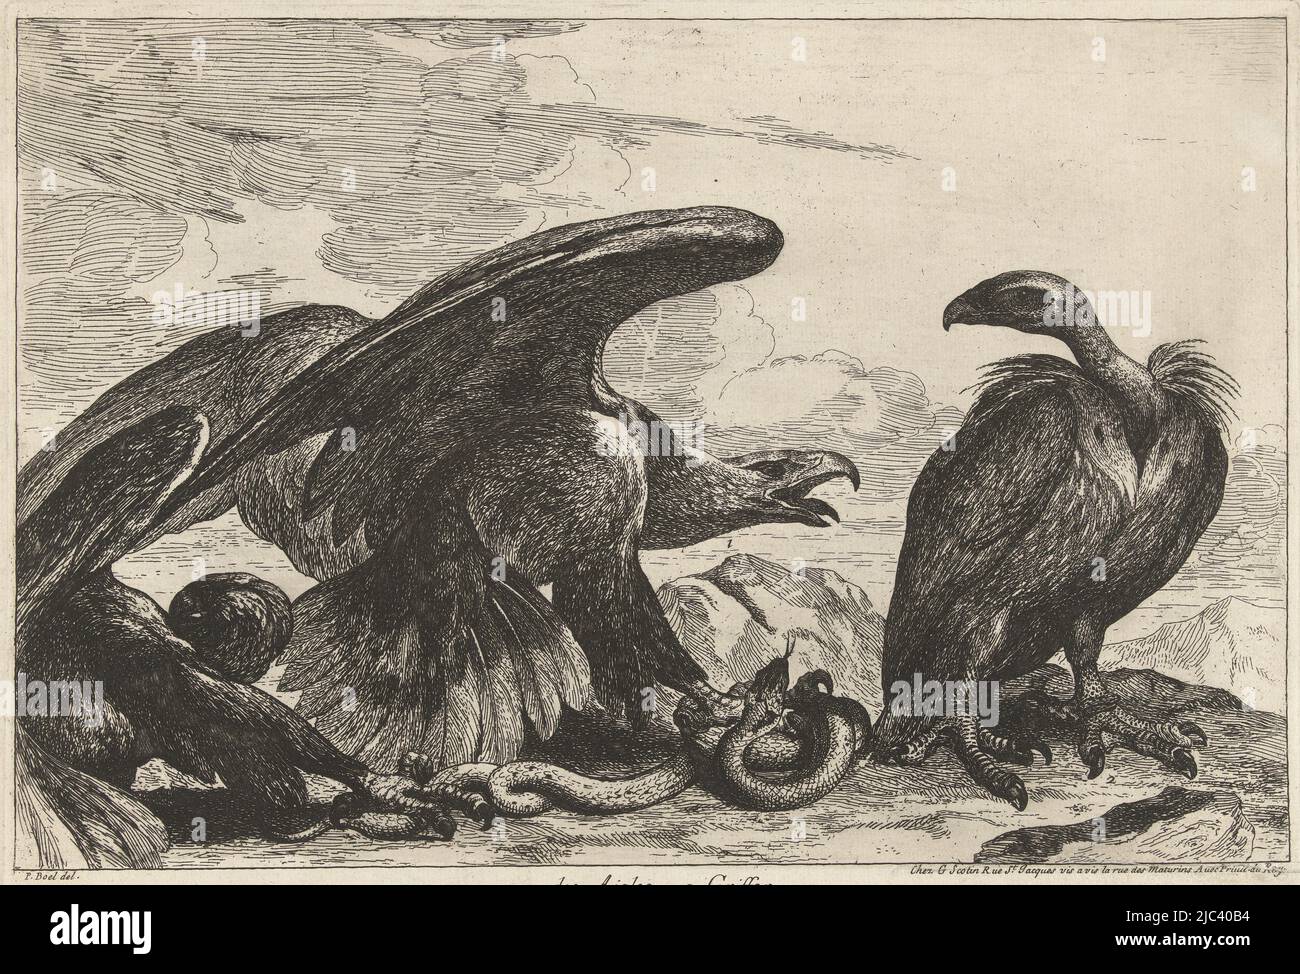 Dans un paysage rocheux, un aigle et un vautour se battent sur un serpent, un Vautour et un aigle avec un serpent 1. Des Aigles 2. Griffon (titre sur objet) Birds of the Versailles Menagerie (titre de la série), imprimerie: Peeter Boel, (attribué à), dessinateur intermédiaire: Peeter Boel, (mentionné sur objet), éditeur: Gérard Scotine (I), (mentionné sur objet), Paris, 1670 - 1674, papier, gravure, h 250 mm × l 355 mm Banque D'Images